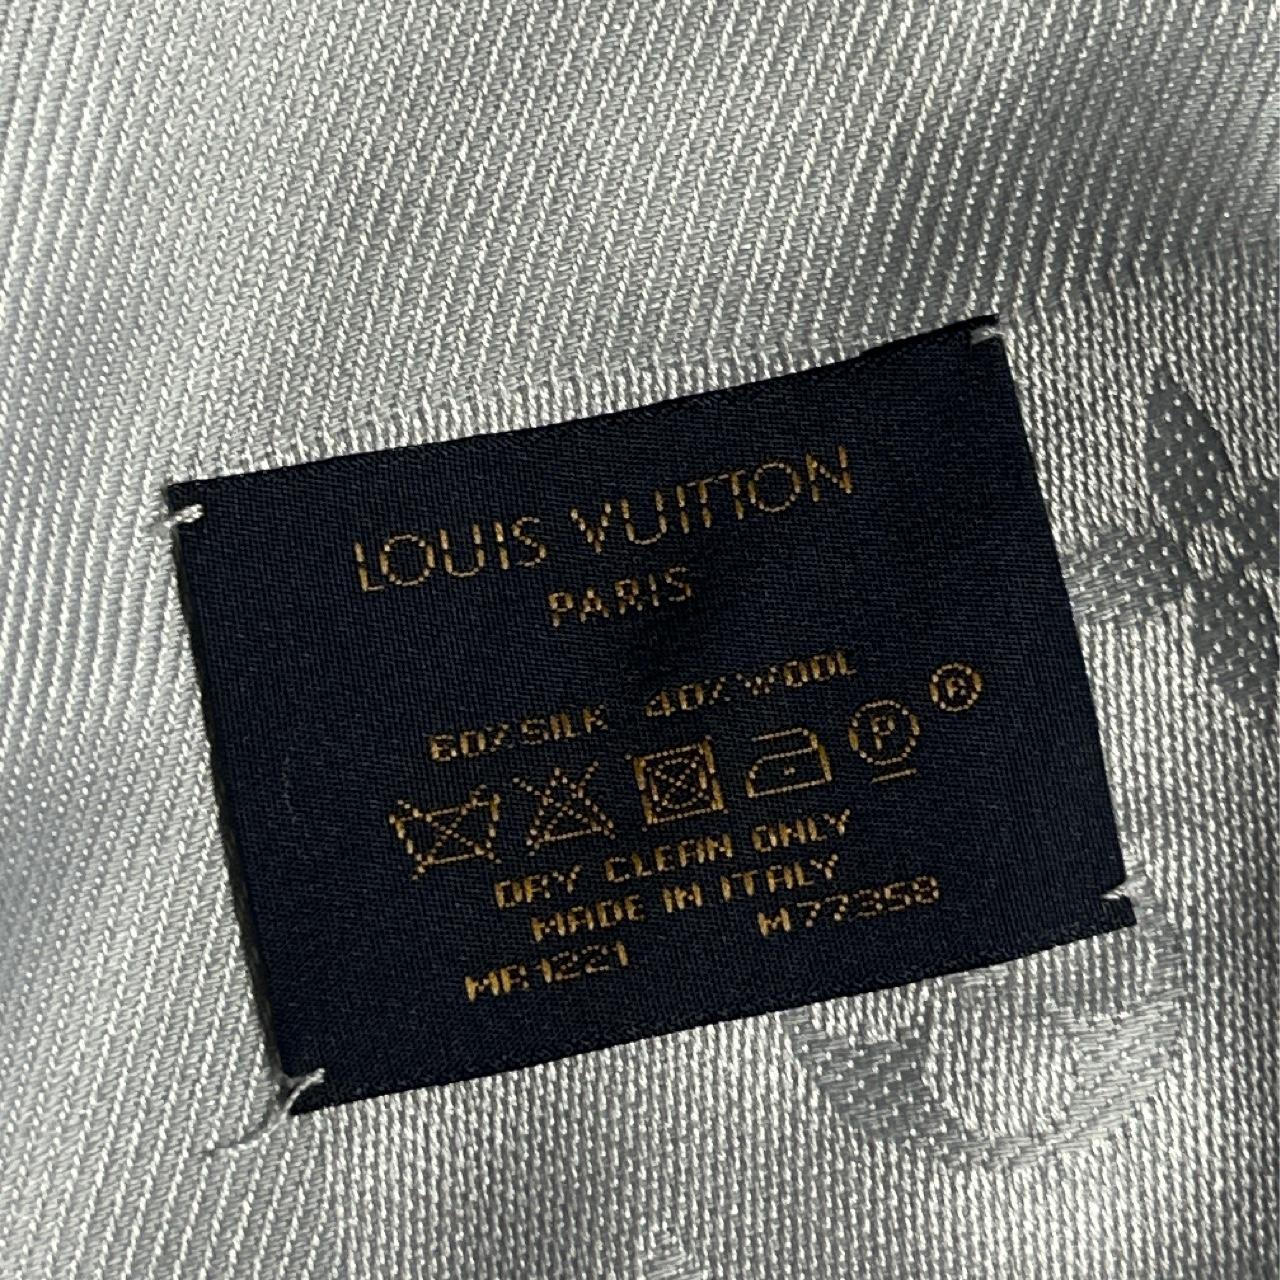 Authentic Louis Vuitton Scarf never worn still in - Depop